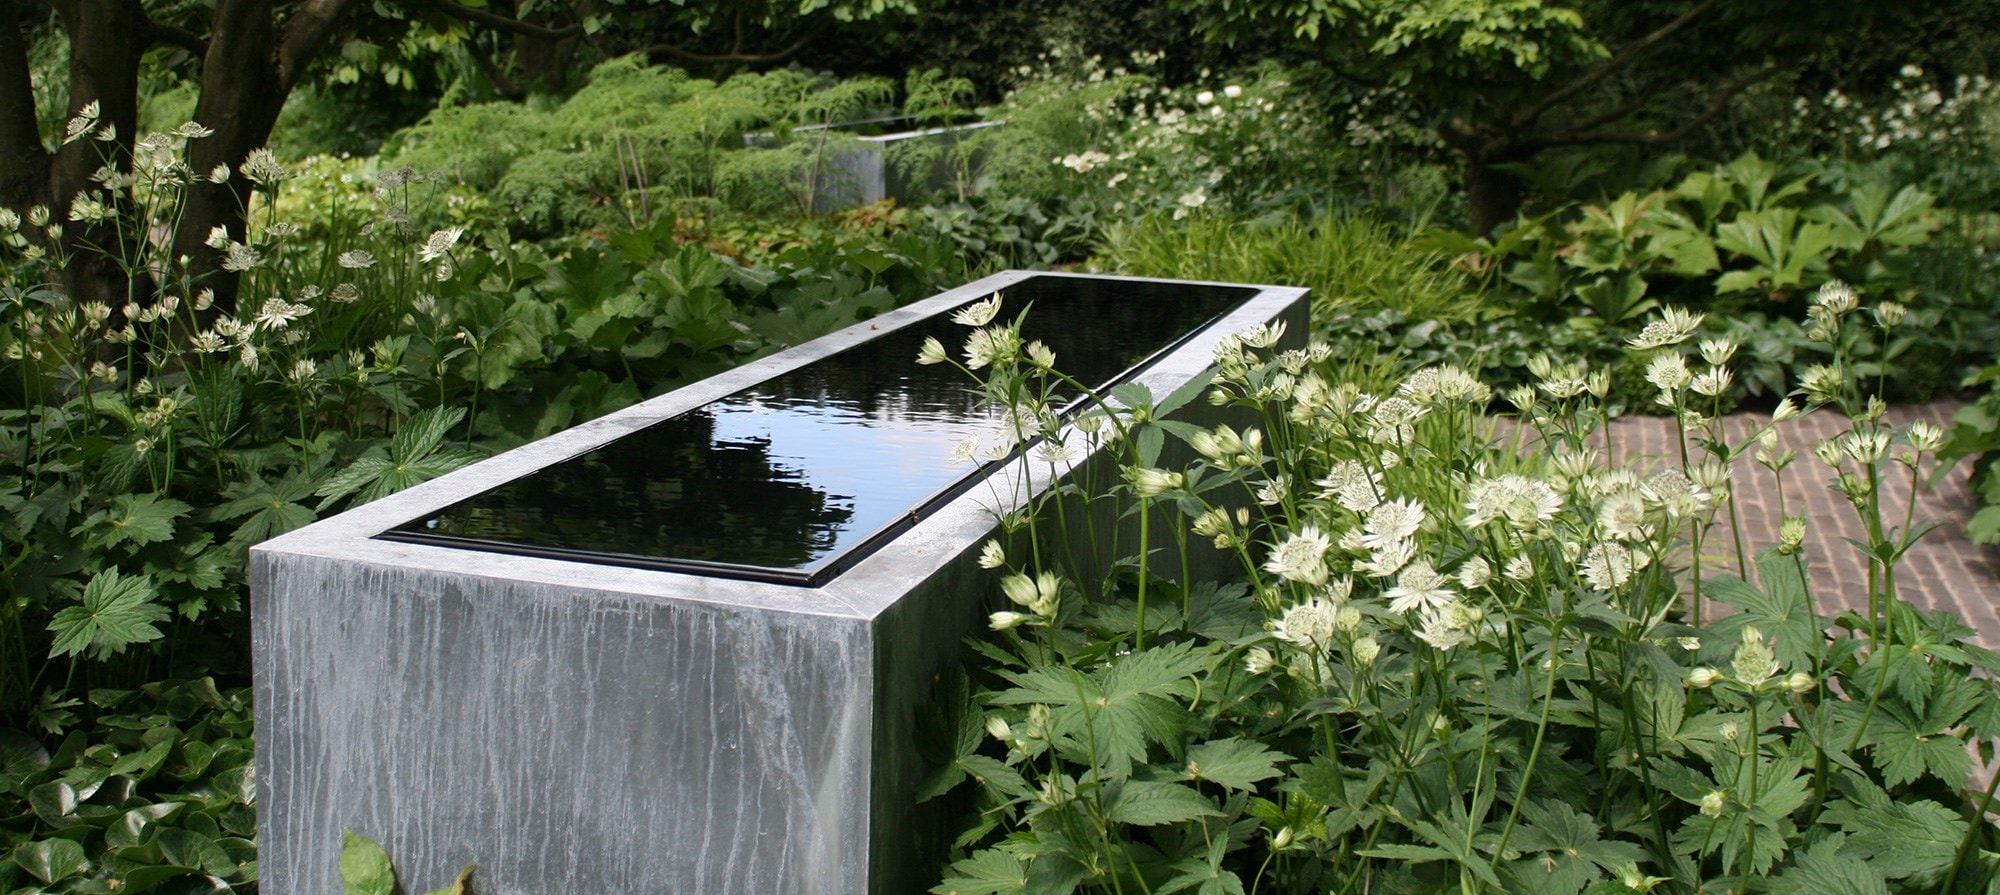 The Laurent-Perrier Garden 2008 designed by Tom Stuart-Smith